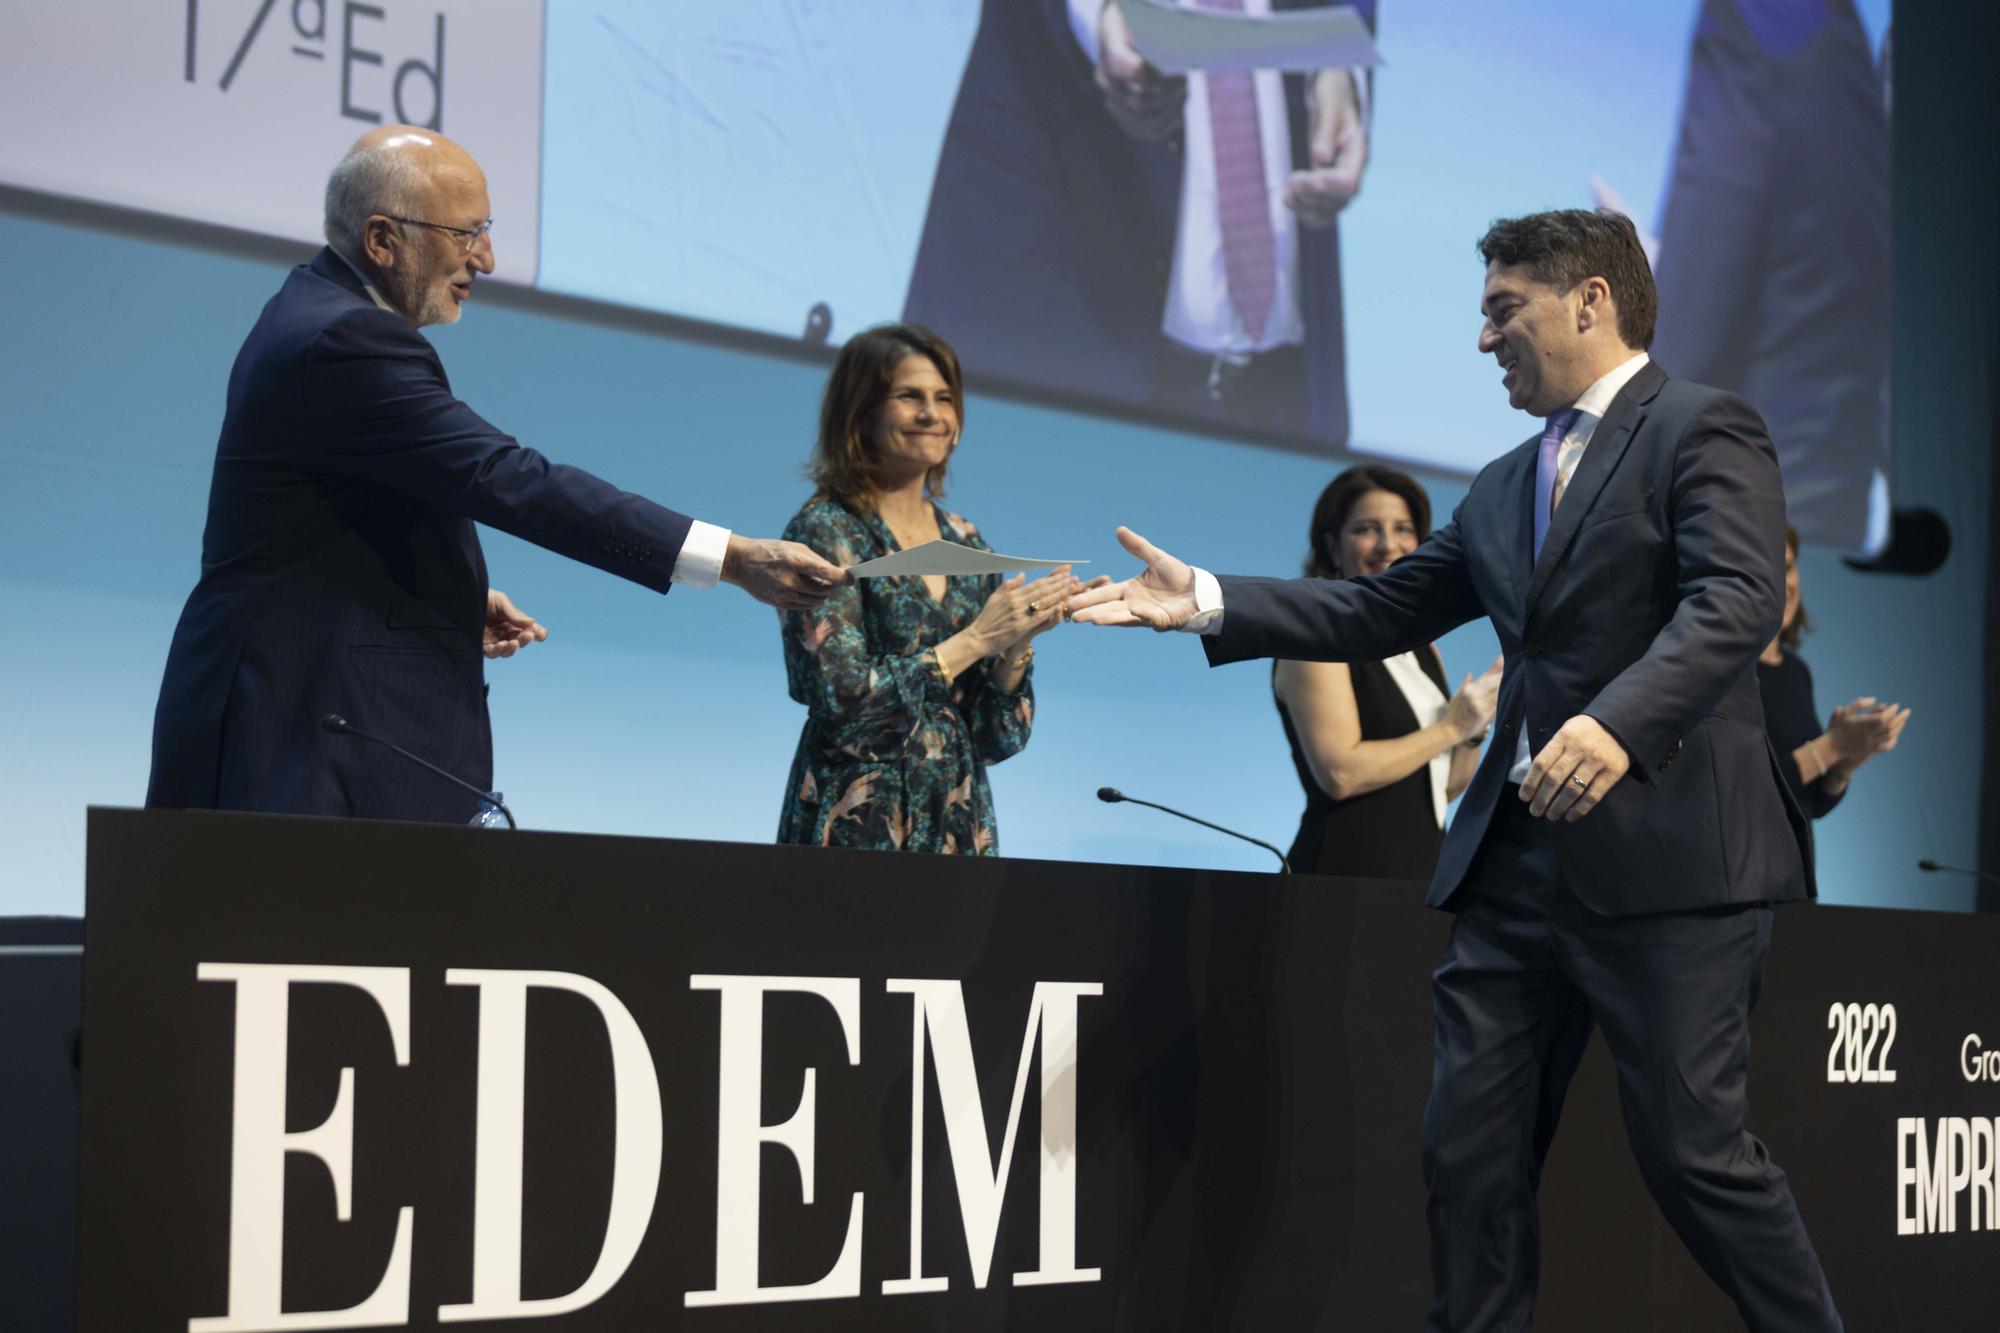 Graduación alumnos EDEM Escuela de Empresarios 2022 en València